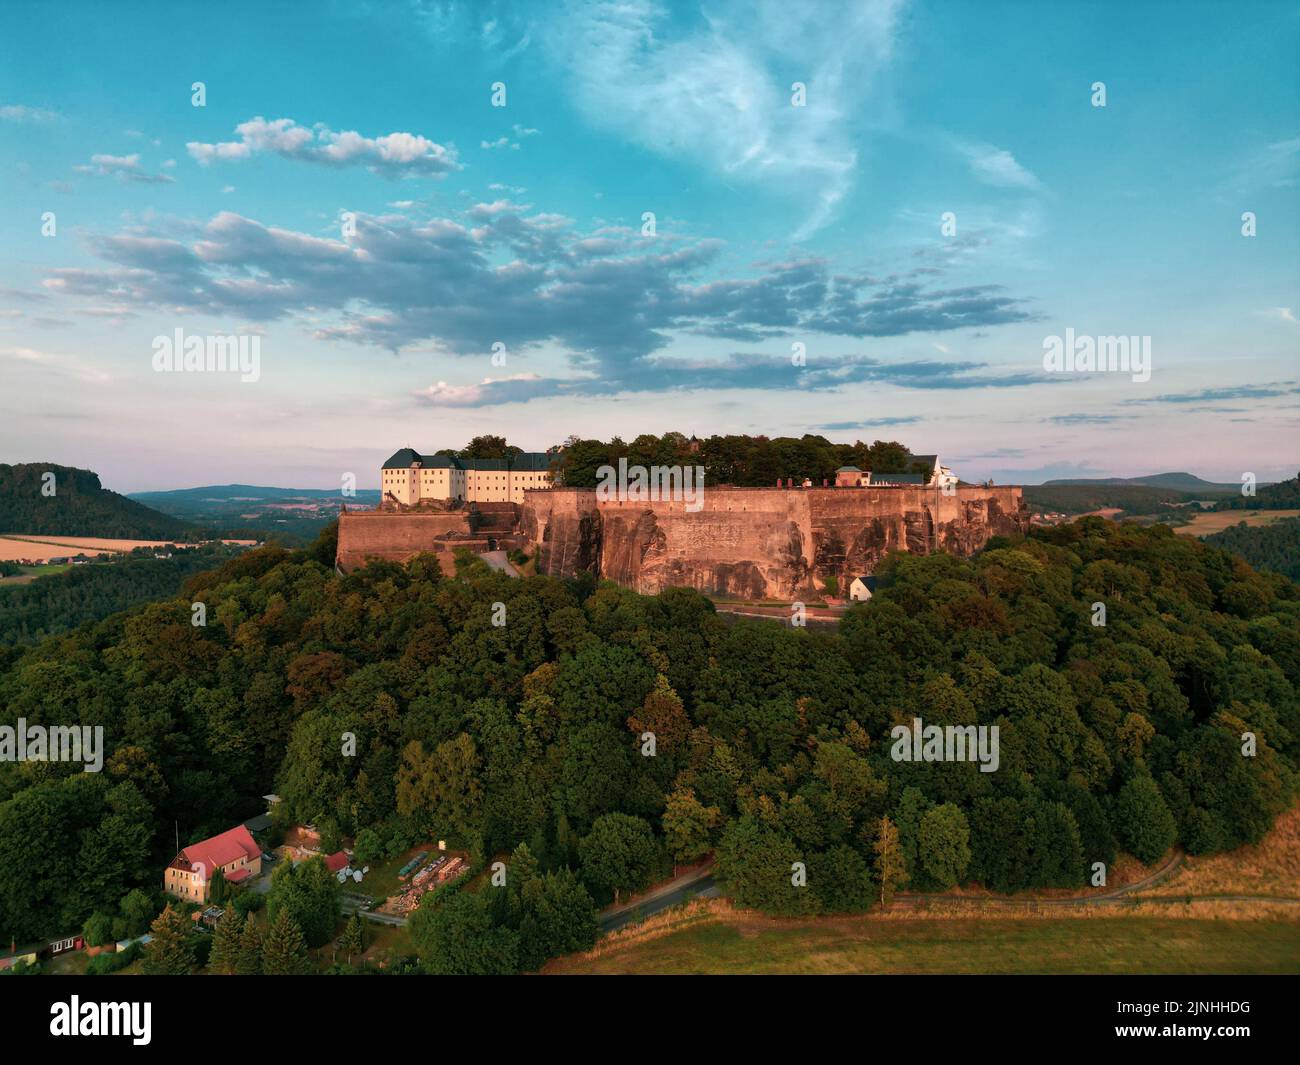 Una vista impresionante de la Fortaleza de Konigstein en Sajonia, Alemania que se alza orgullosa entre densos árboles Foto de stock